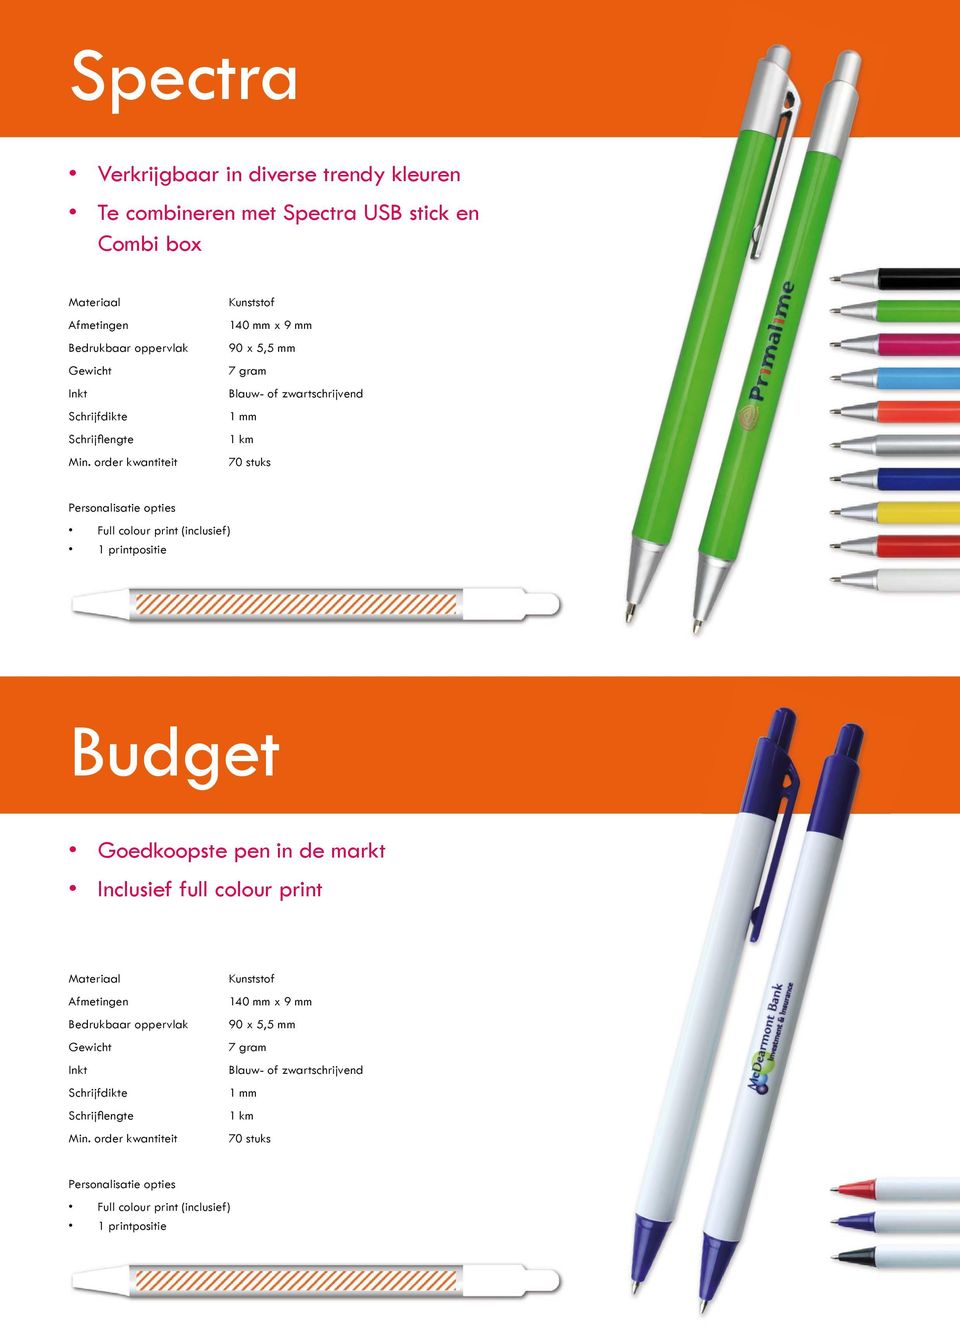 colour print (inclusief) Budget Goedkoopste pen in de markt Inclusief full